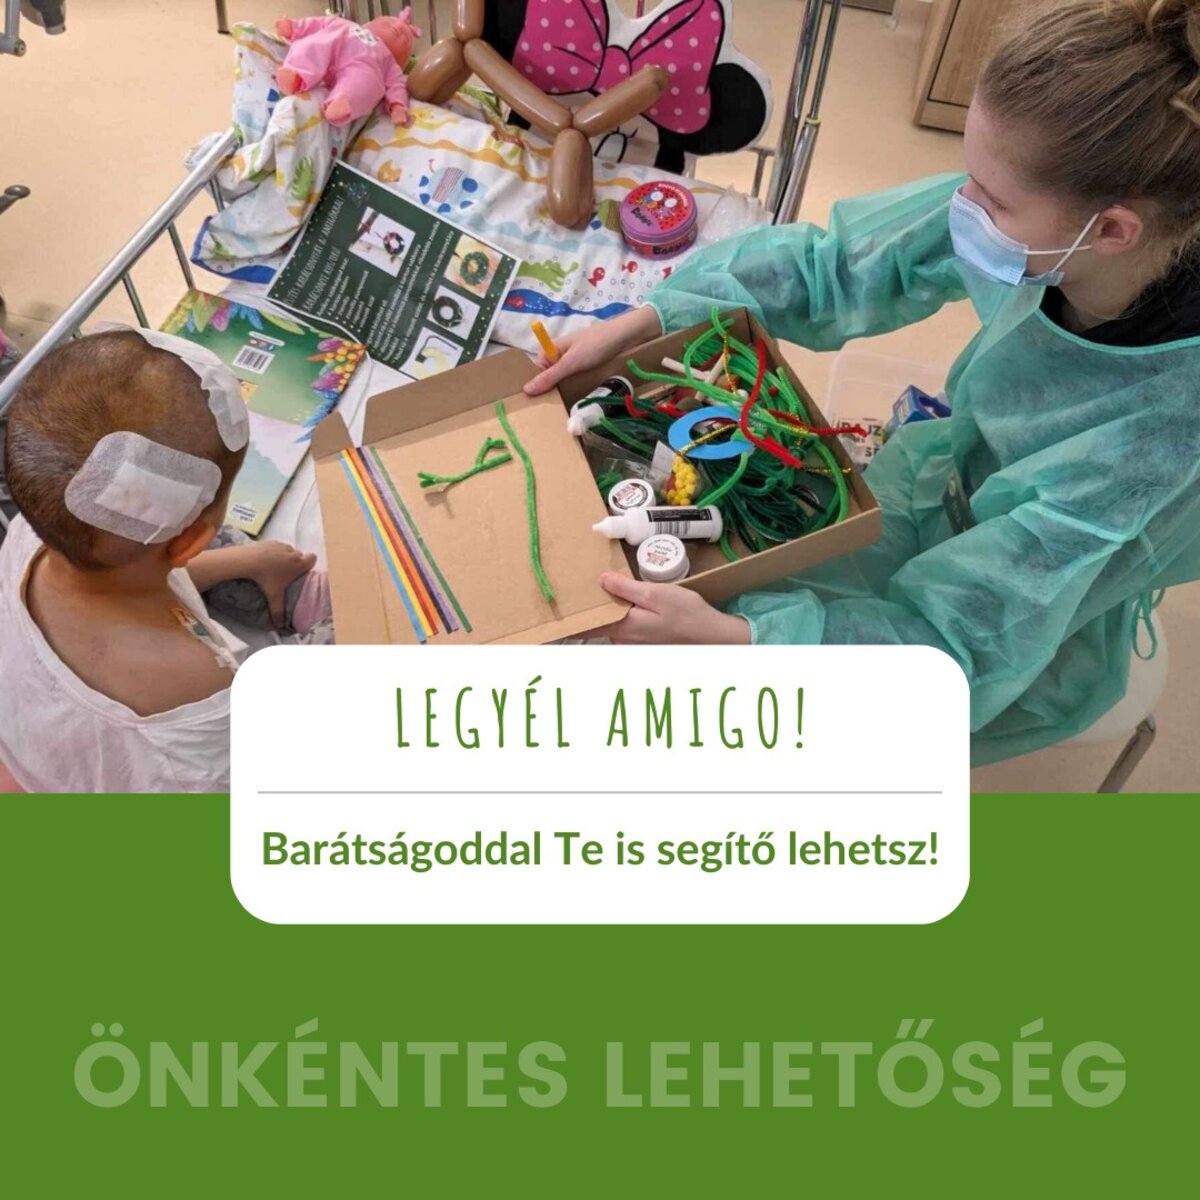 Az Amigos egy olyan önkéntes szervezet, amely a játék és nyelvtanulás által próbál egy kis boldogságot csempészni a kórházban lévő gyerekek mindennapjaiba. Célunk, hogy visszaadjuk nekik a barátaikat, és segítsünk nekik élvezni az élet apró örömeit még a nehéz időkben is.